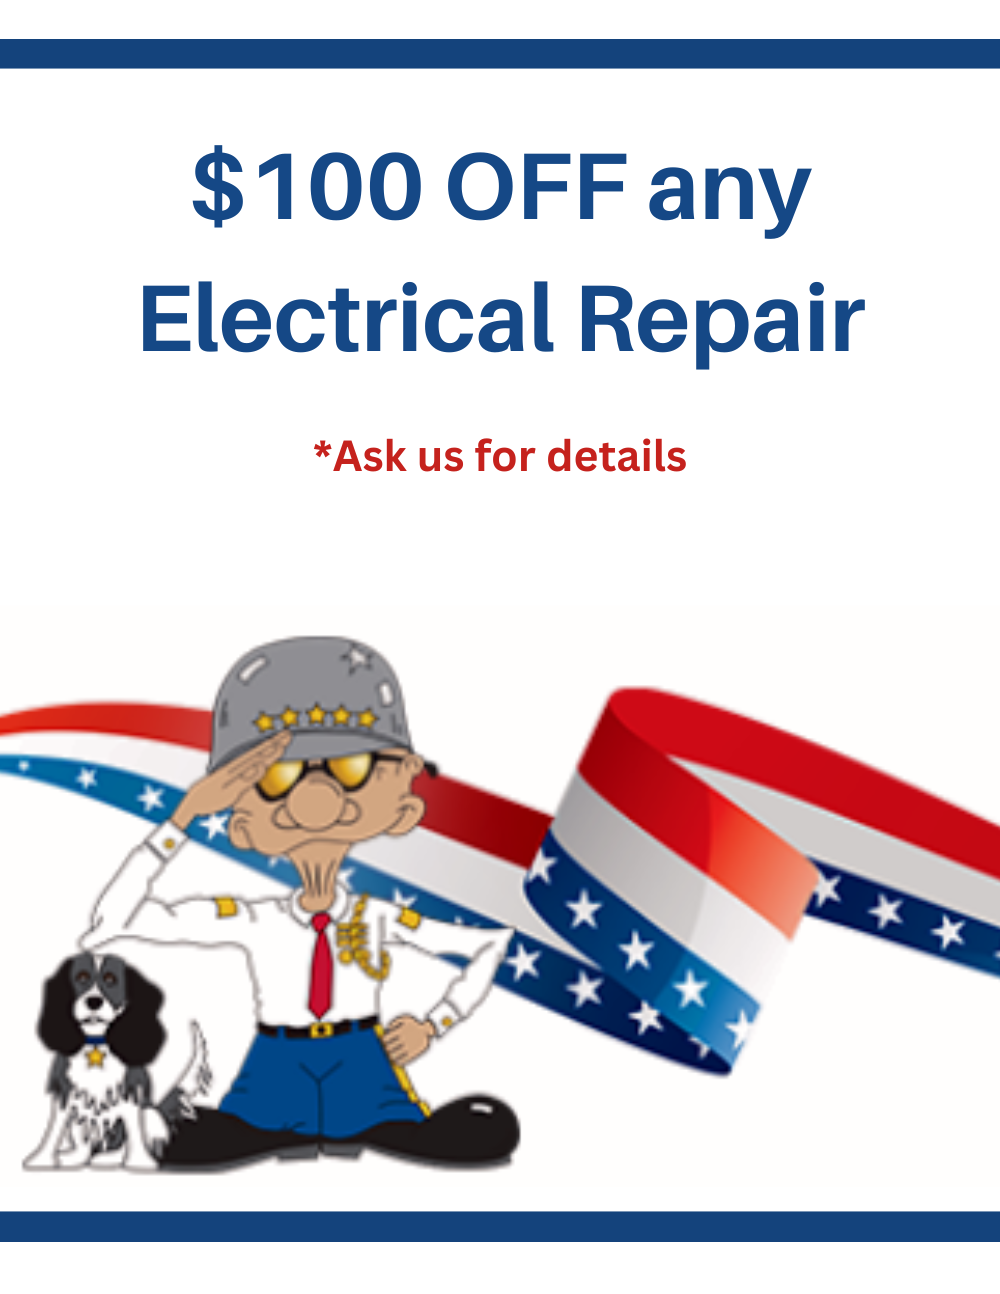 $100 OFF Electrical Repairs General